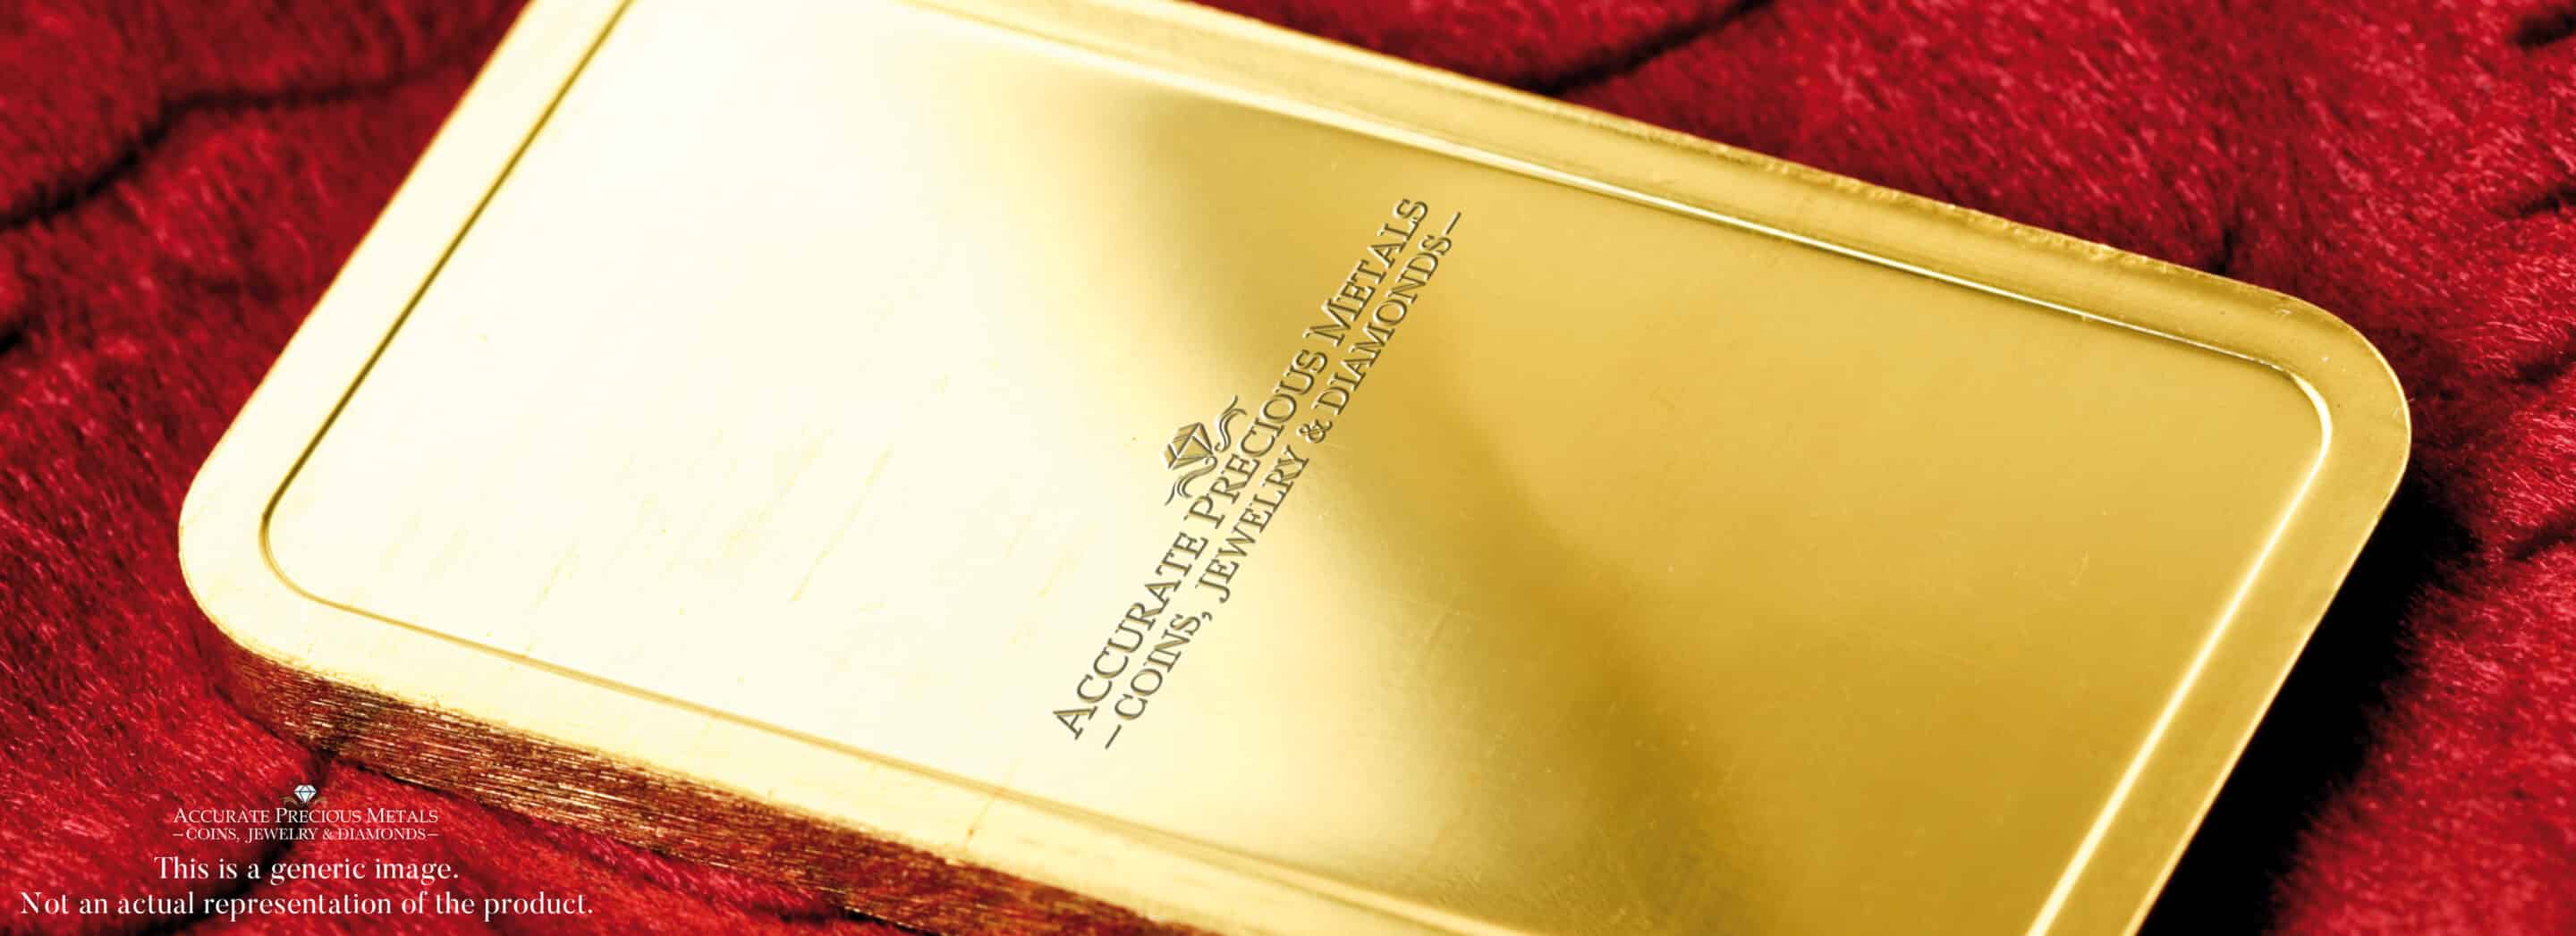 Royal Canadian Mint 1/4 oz Gold Bar - Craftsmanship for Discerning Investors